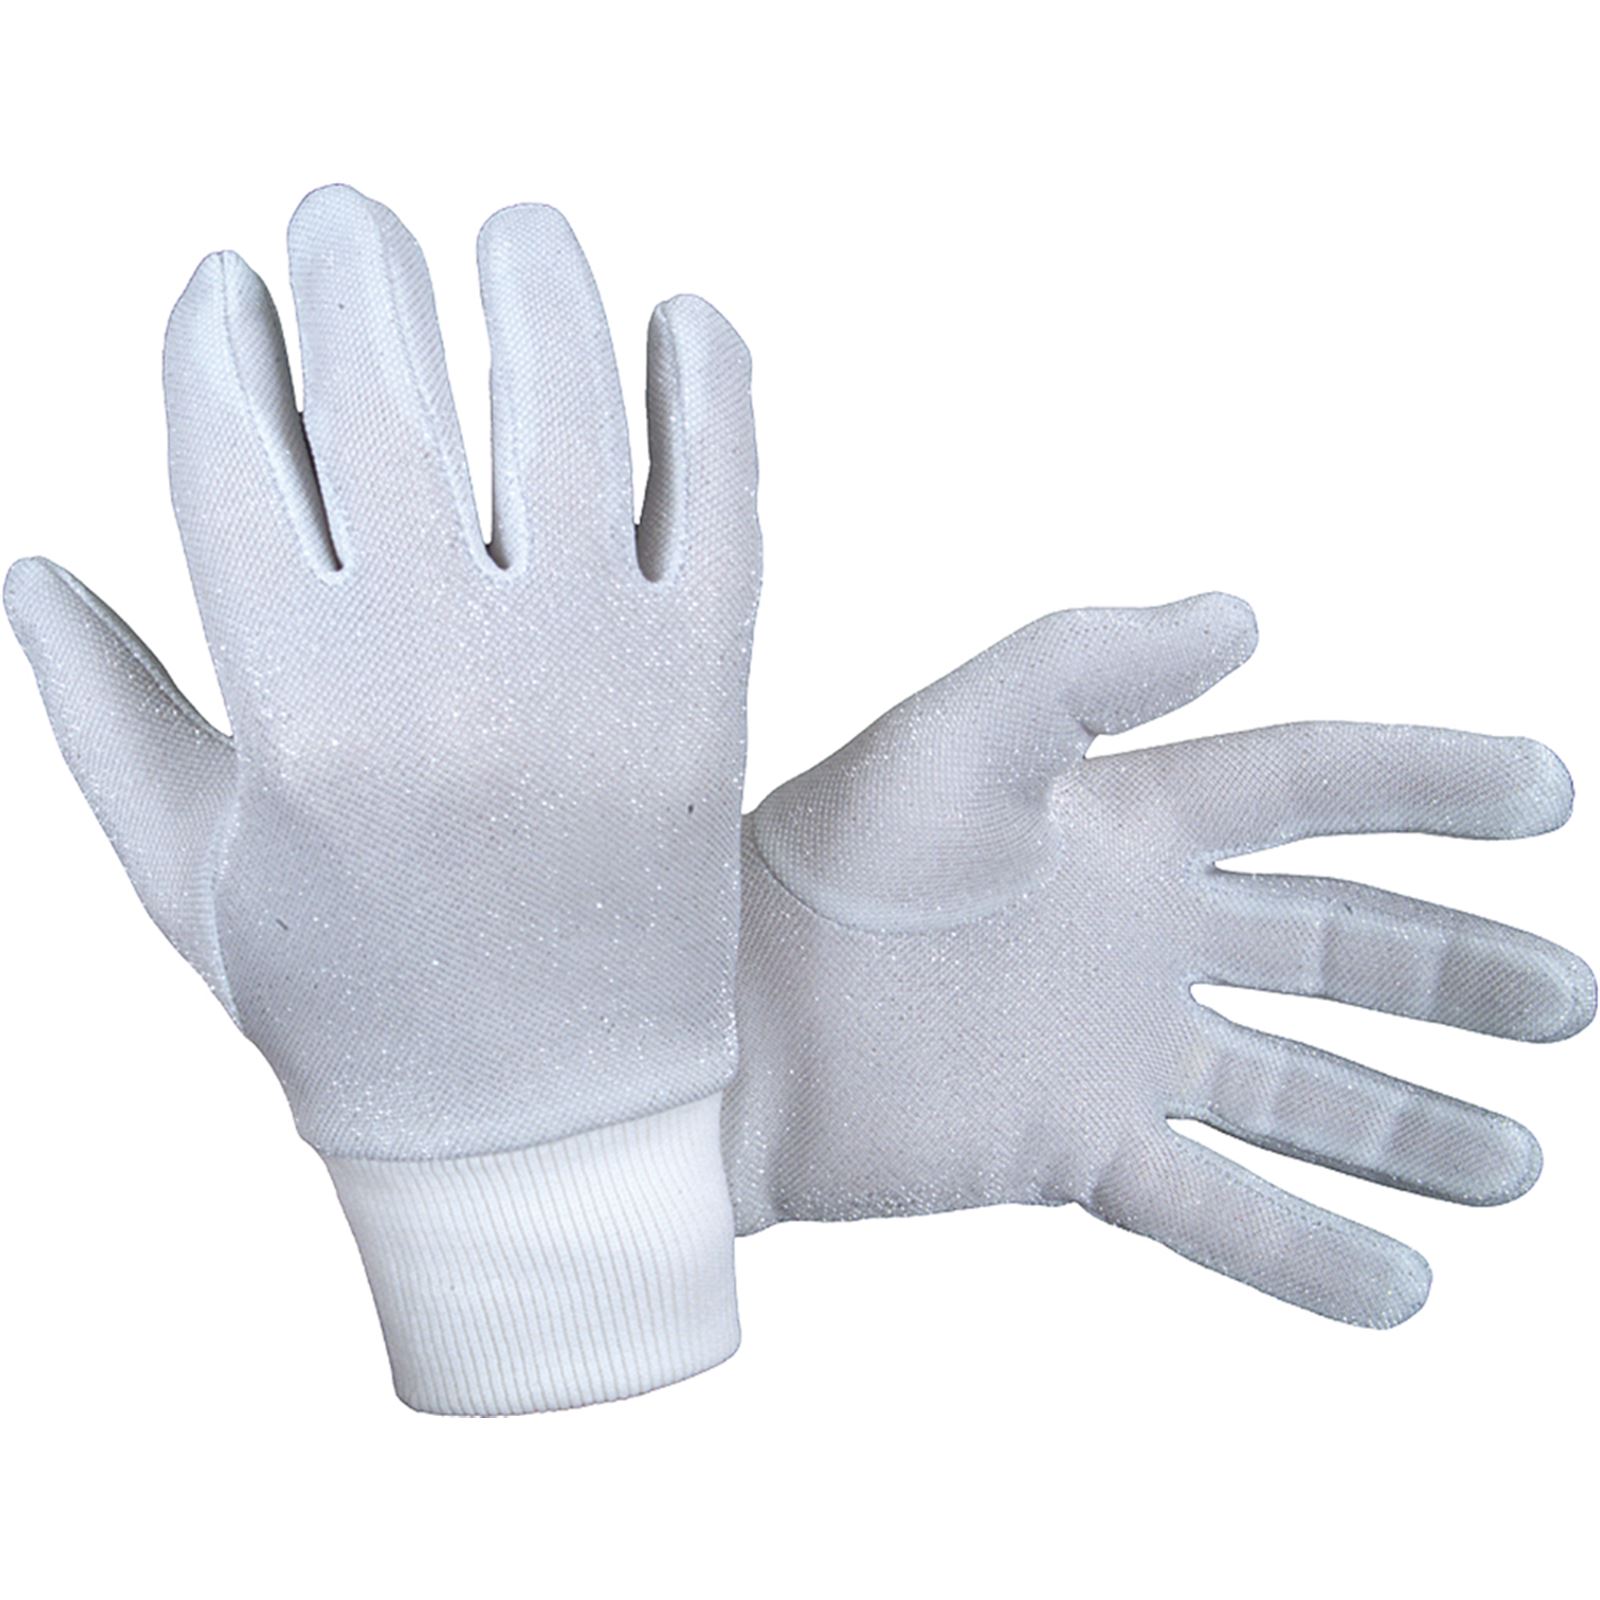 SPI Metallic Glove Liners